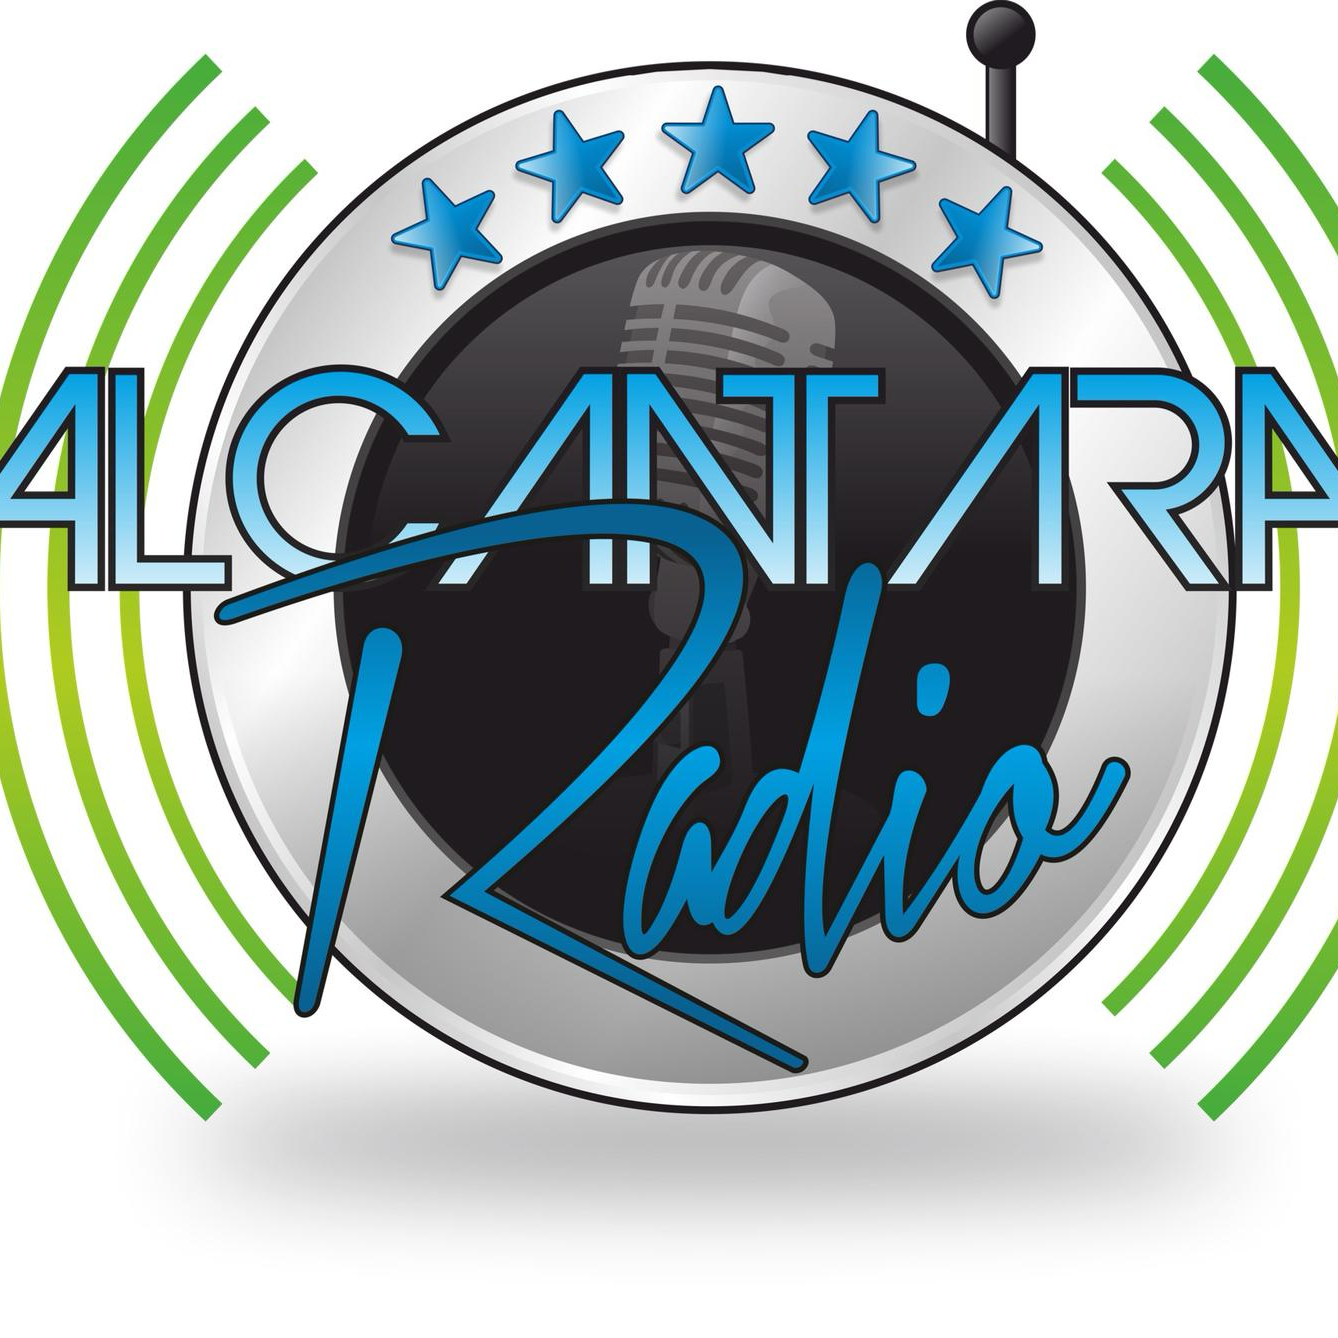 Alcantara Radio